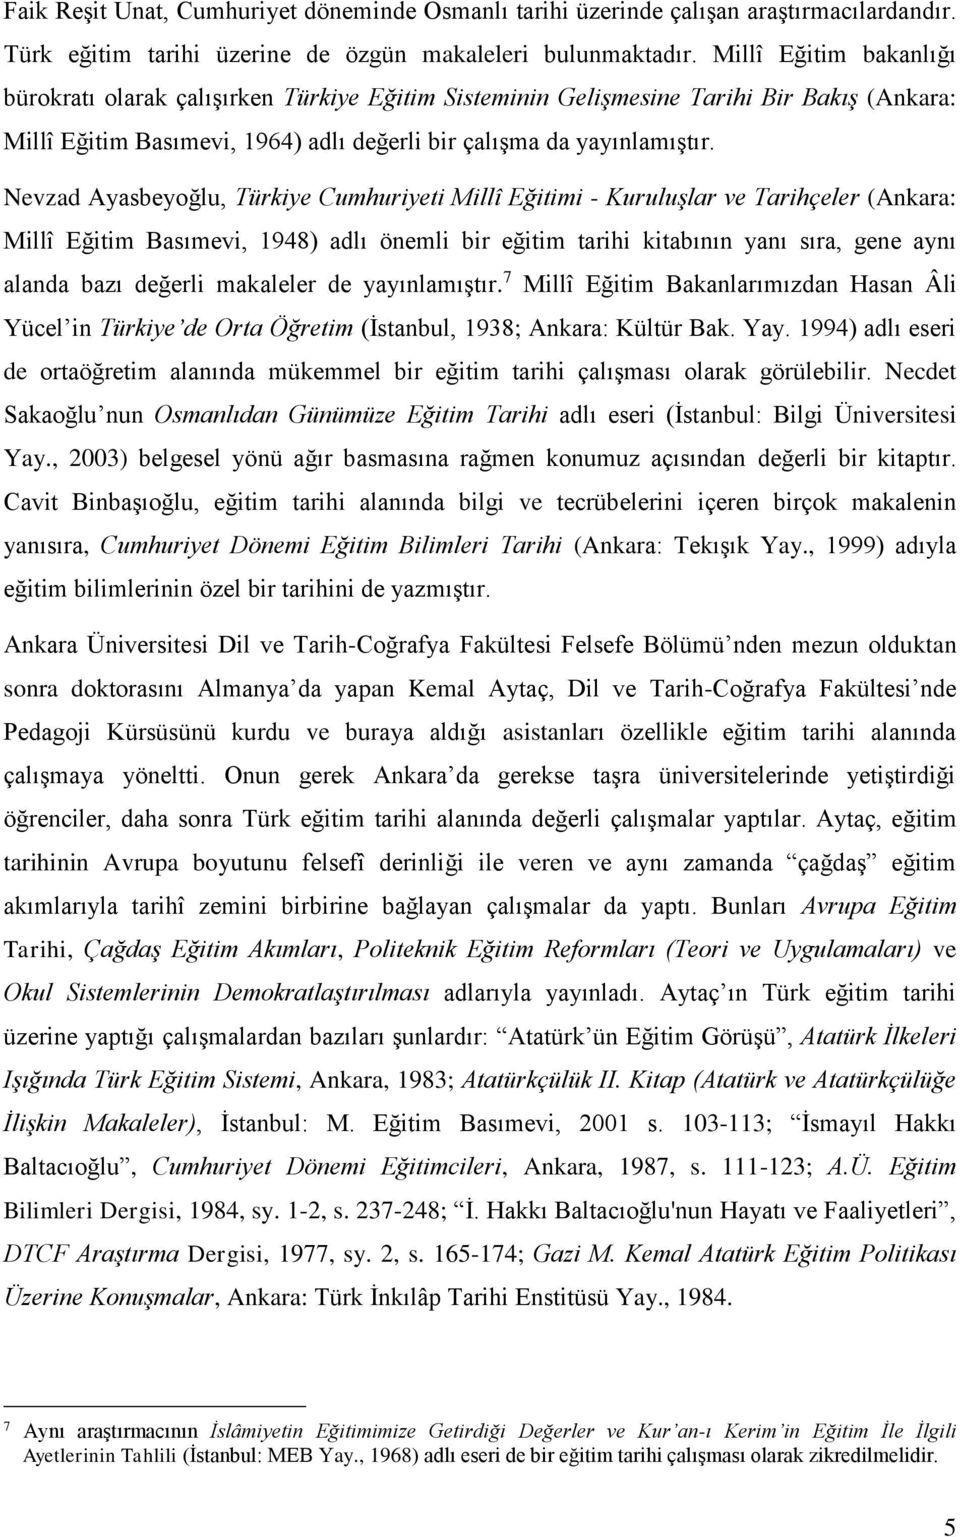 Nevzad Ayasbeyoğlu, Türkiye Cumhuriyeti Millî Eğitimi - Kuruluşlar ve Tarihçeler (Ankara: Millî Eğitim Basımevi, 1948) adlı önemli bir eğitim tarihi kitabının yanı sıra, gene aynı alanda bazı değerli